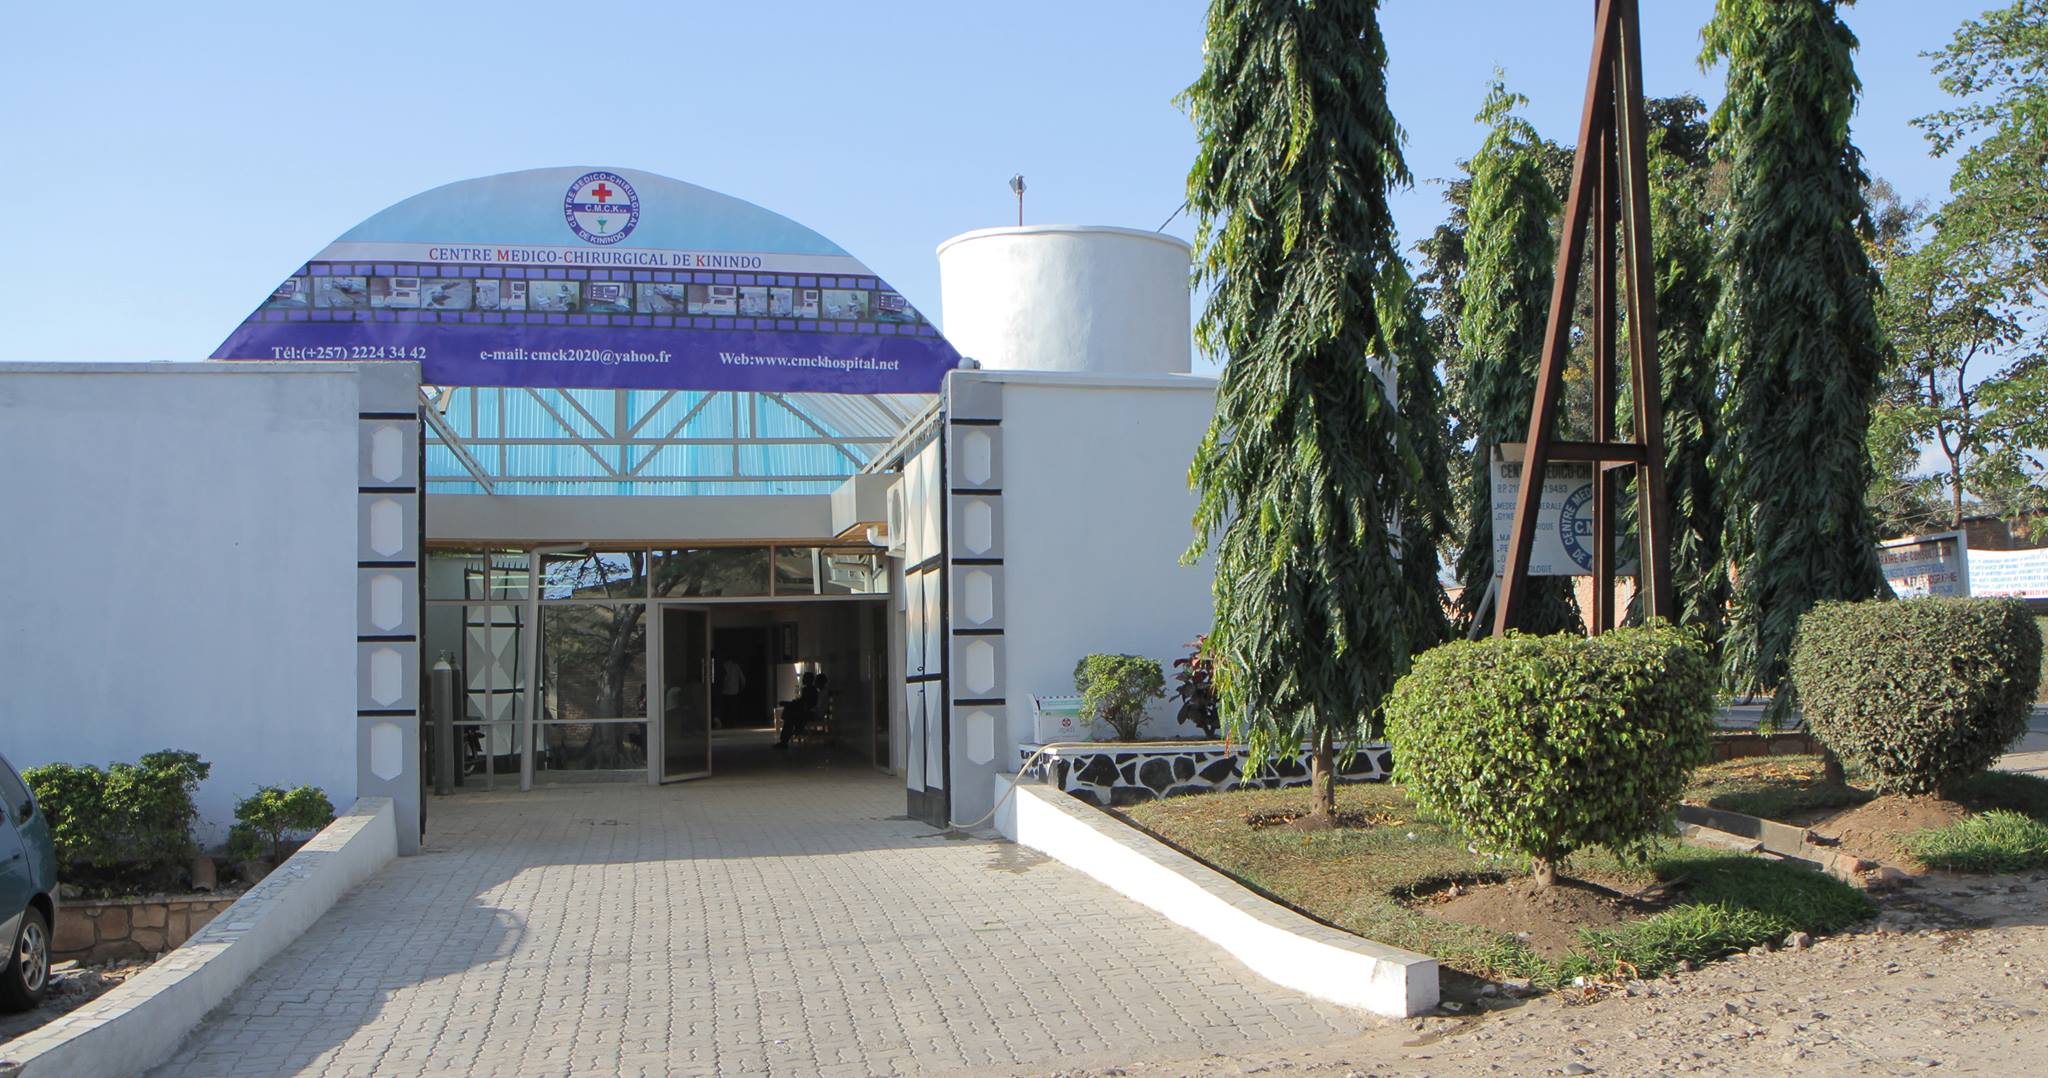 Kinindo Medico-Surgical Center (CMCK)